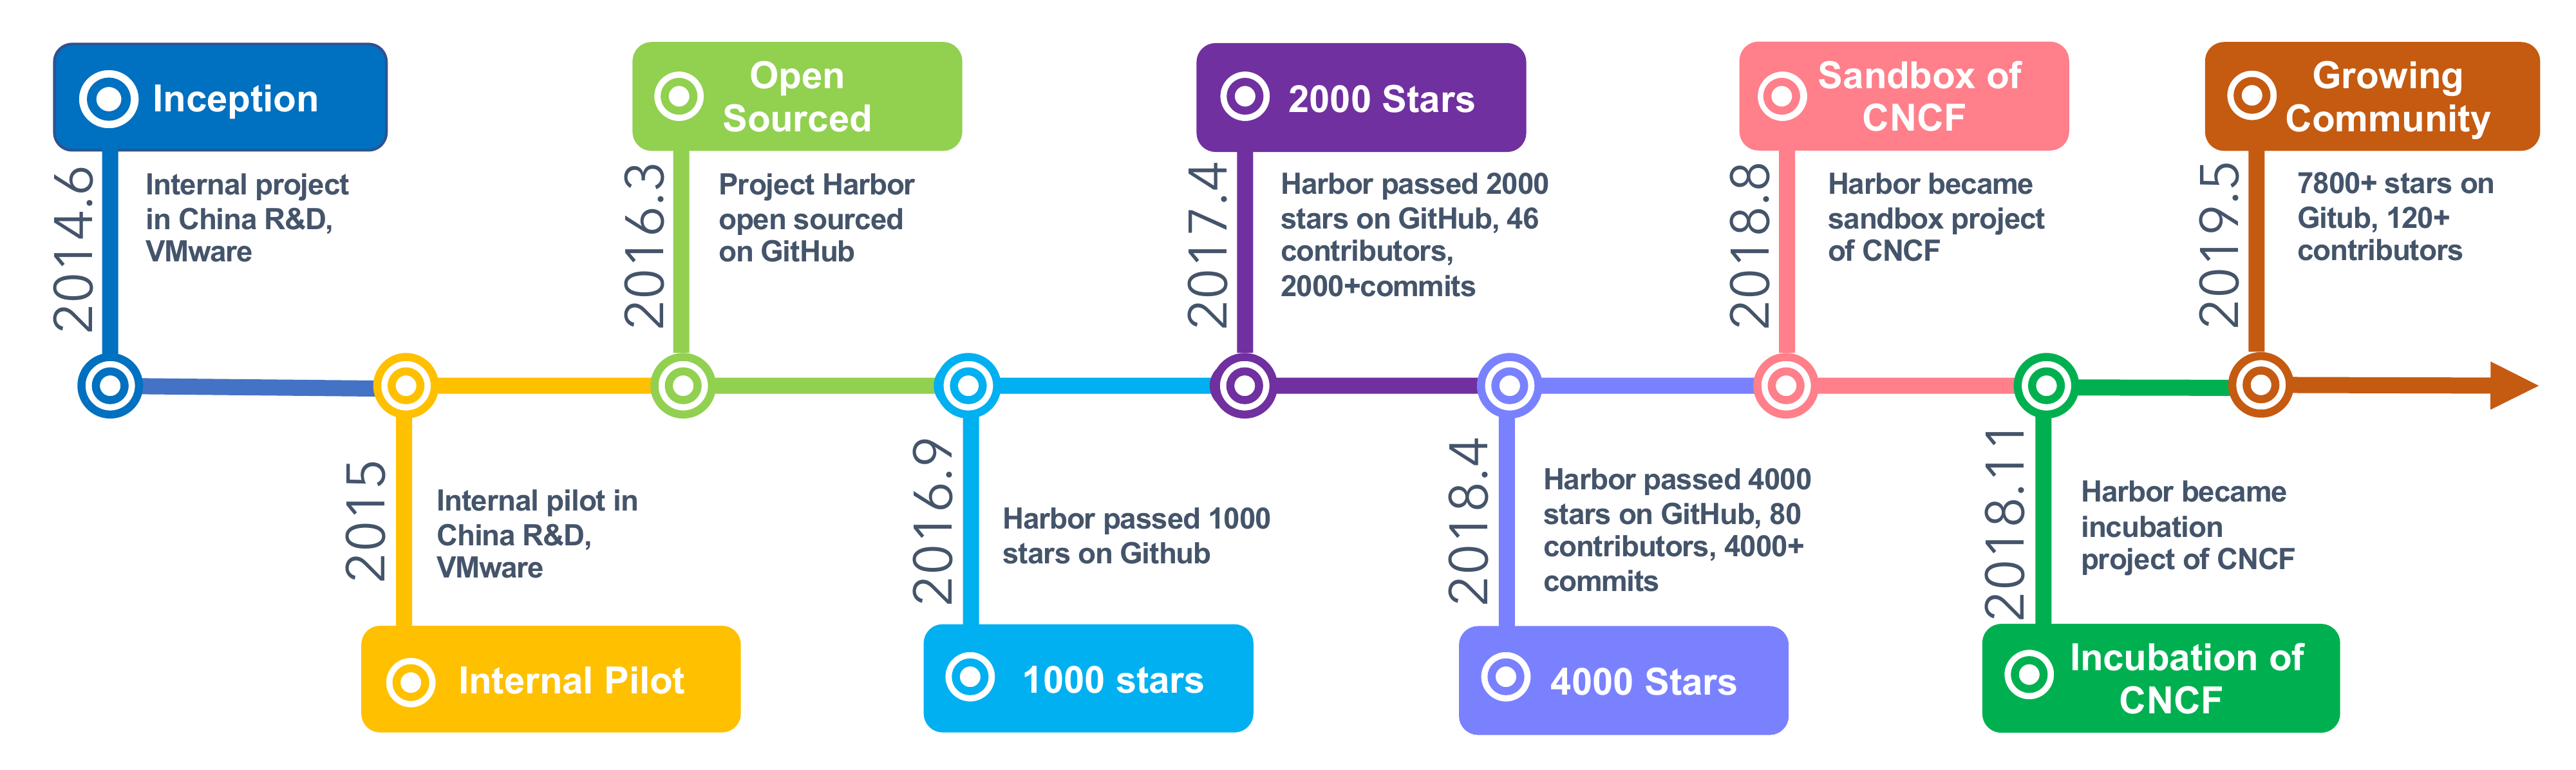 Harbor - timeline